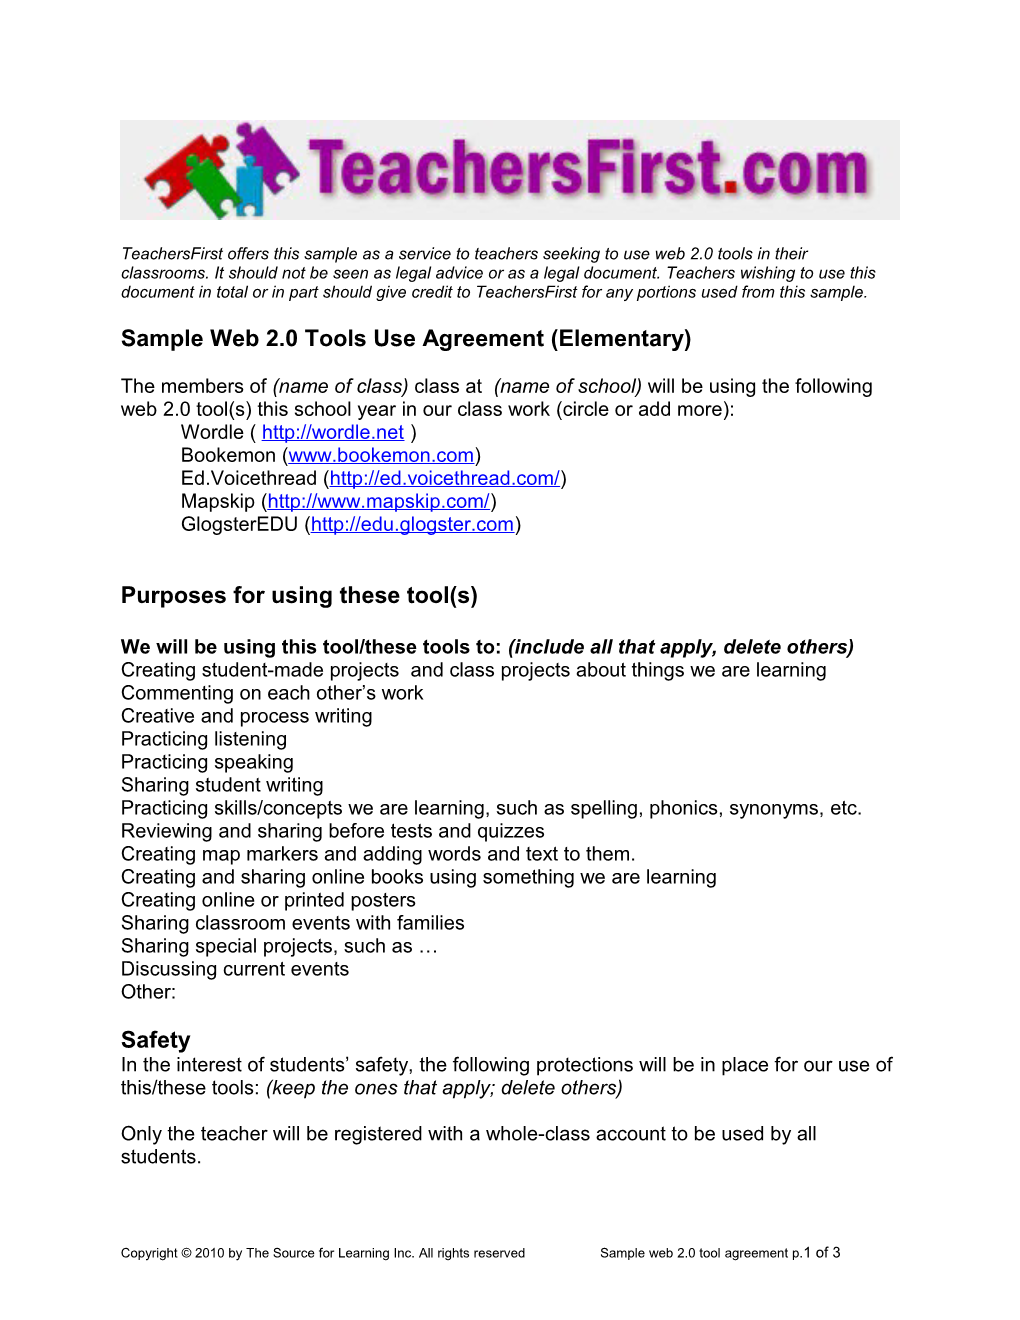 Sample Web 2.0 Tools Use Agreement (Elementary)